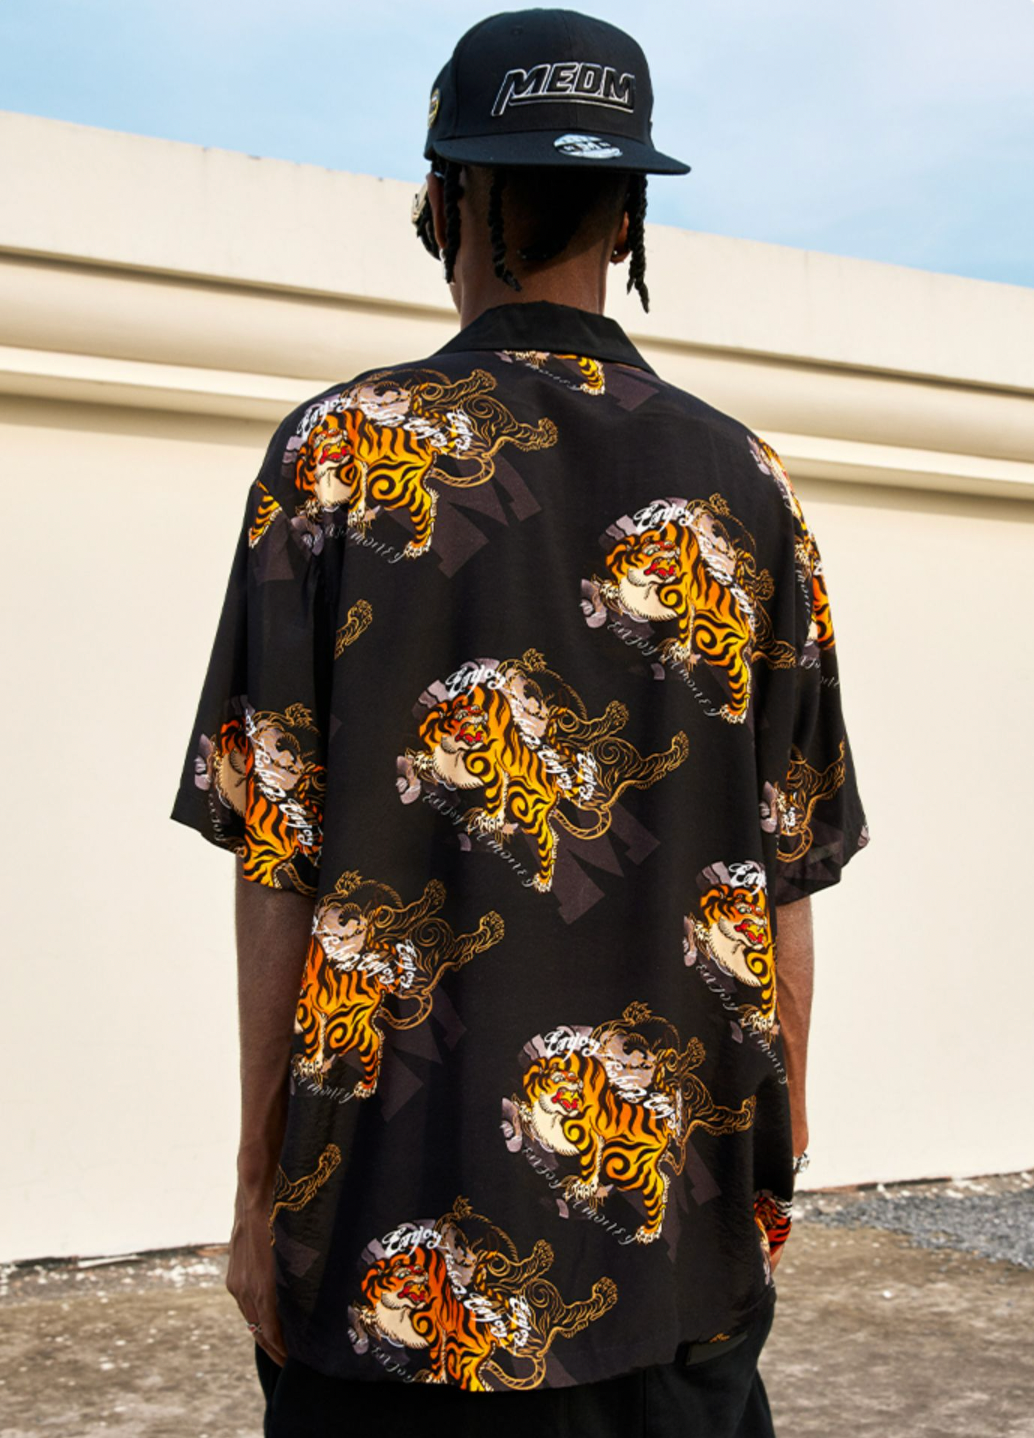 MEDM Tiger Full Printed Short Sleeved Hawaiian Shirt